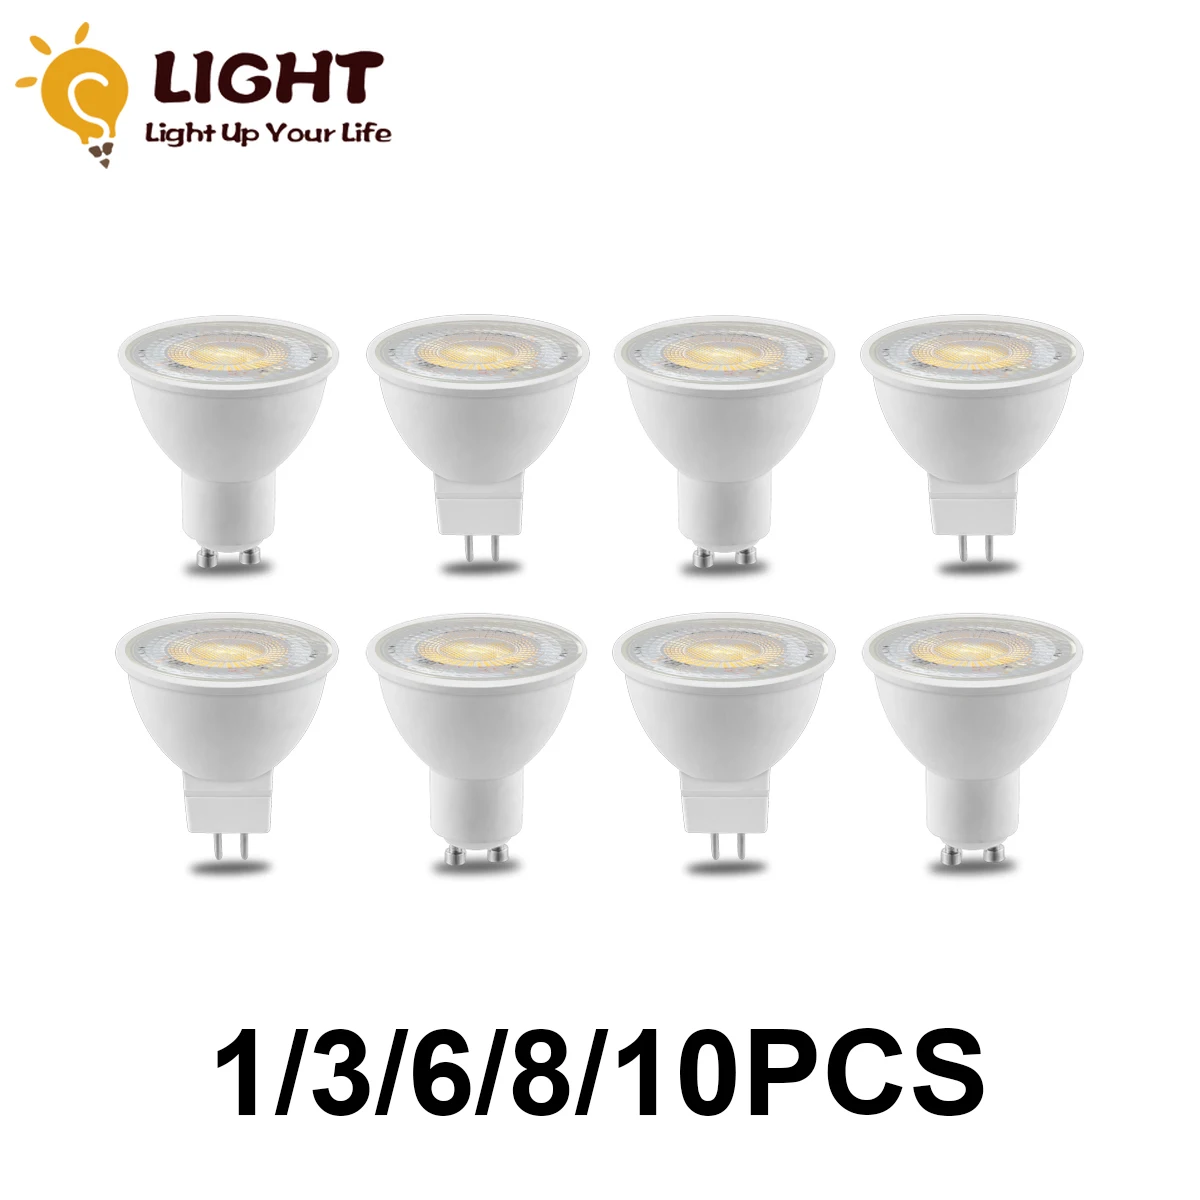 1-10PCS GU10 GU 5,3 LED Lampe Scheinwerfer Birne 38 Grad lampara 220V GU 10 bombillas led MR16 Lampada Spot licht 3W 5W 6W 7W